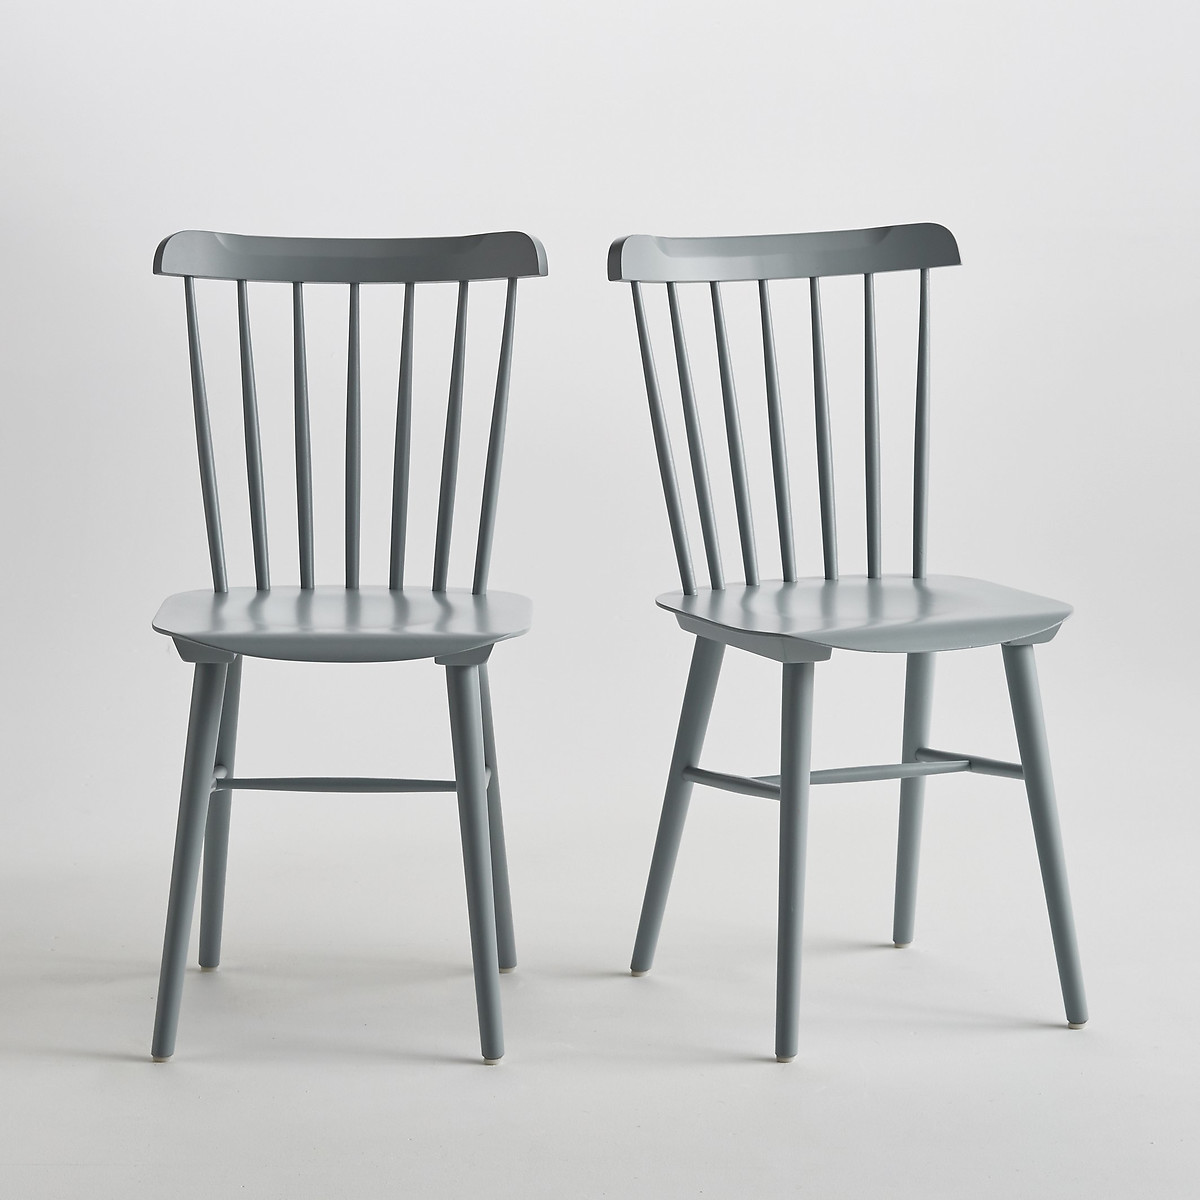 Комплект из 2 стульев Ivy La Redoute La Redoute комплект из 2 серый, размер комплект из 2 - фото 1